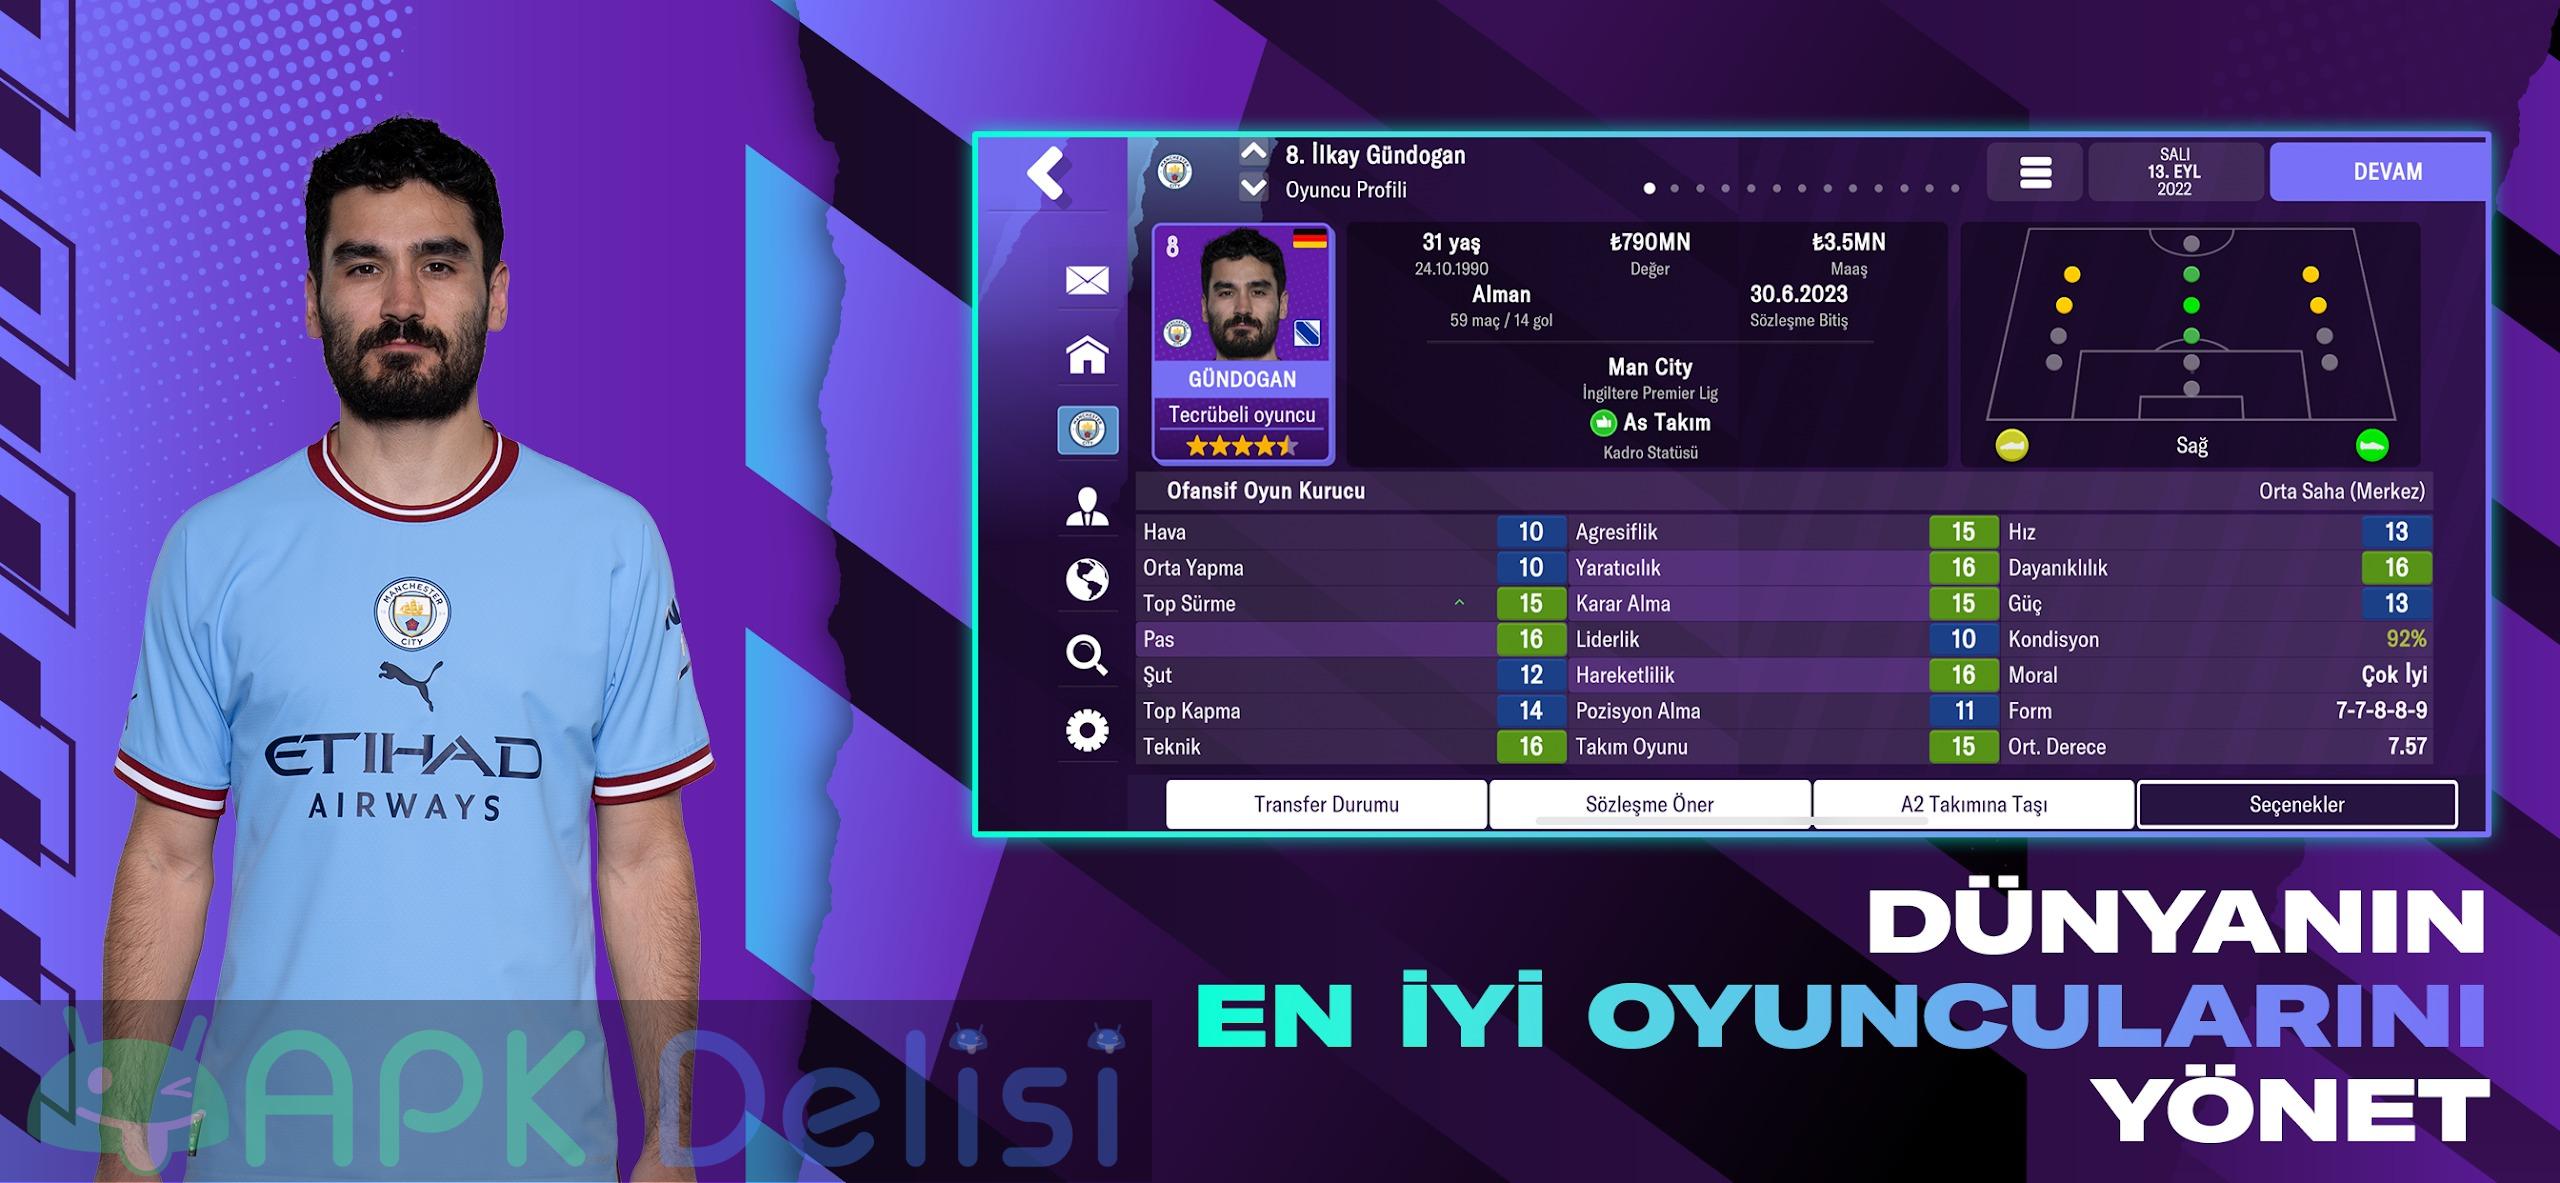 Football Manager 2023 Mobile v14.4.0 FULL APK — TAM SÜRÜM 1